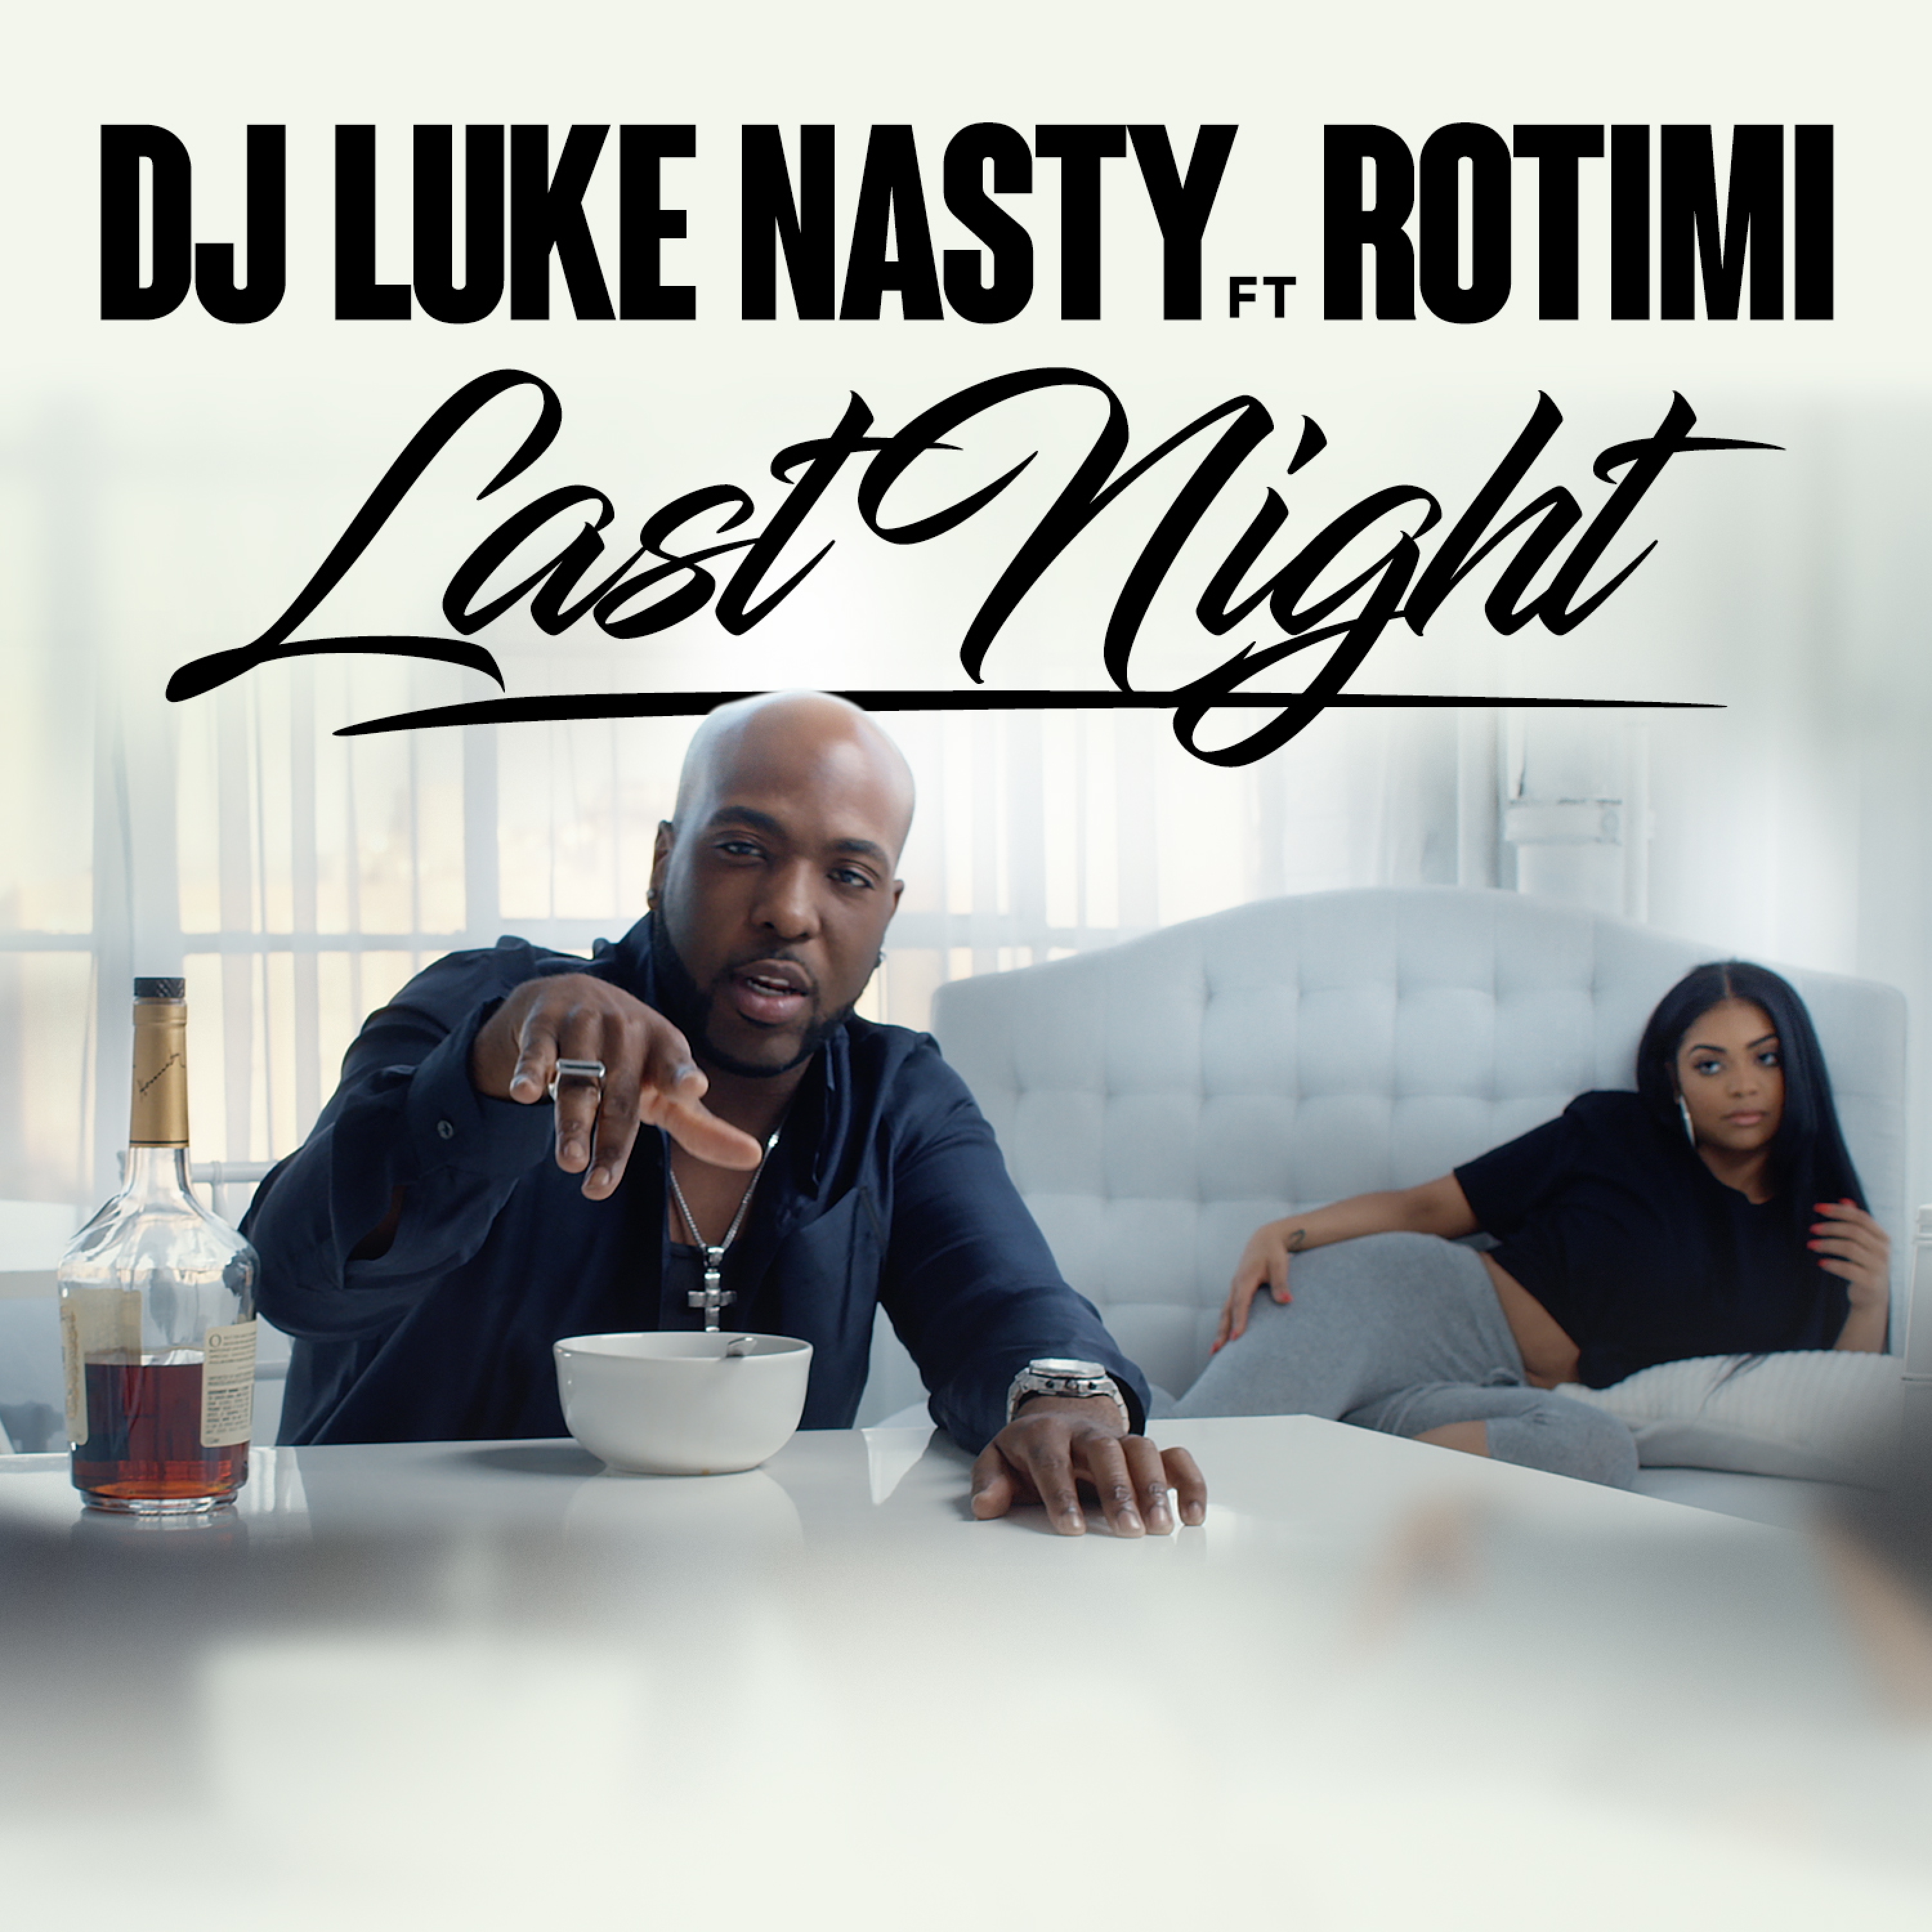 Last Night (feat. Rotimi)